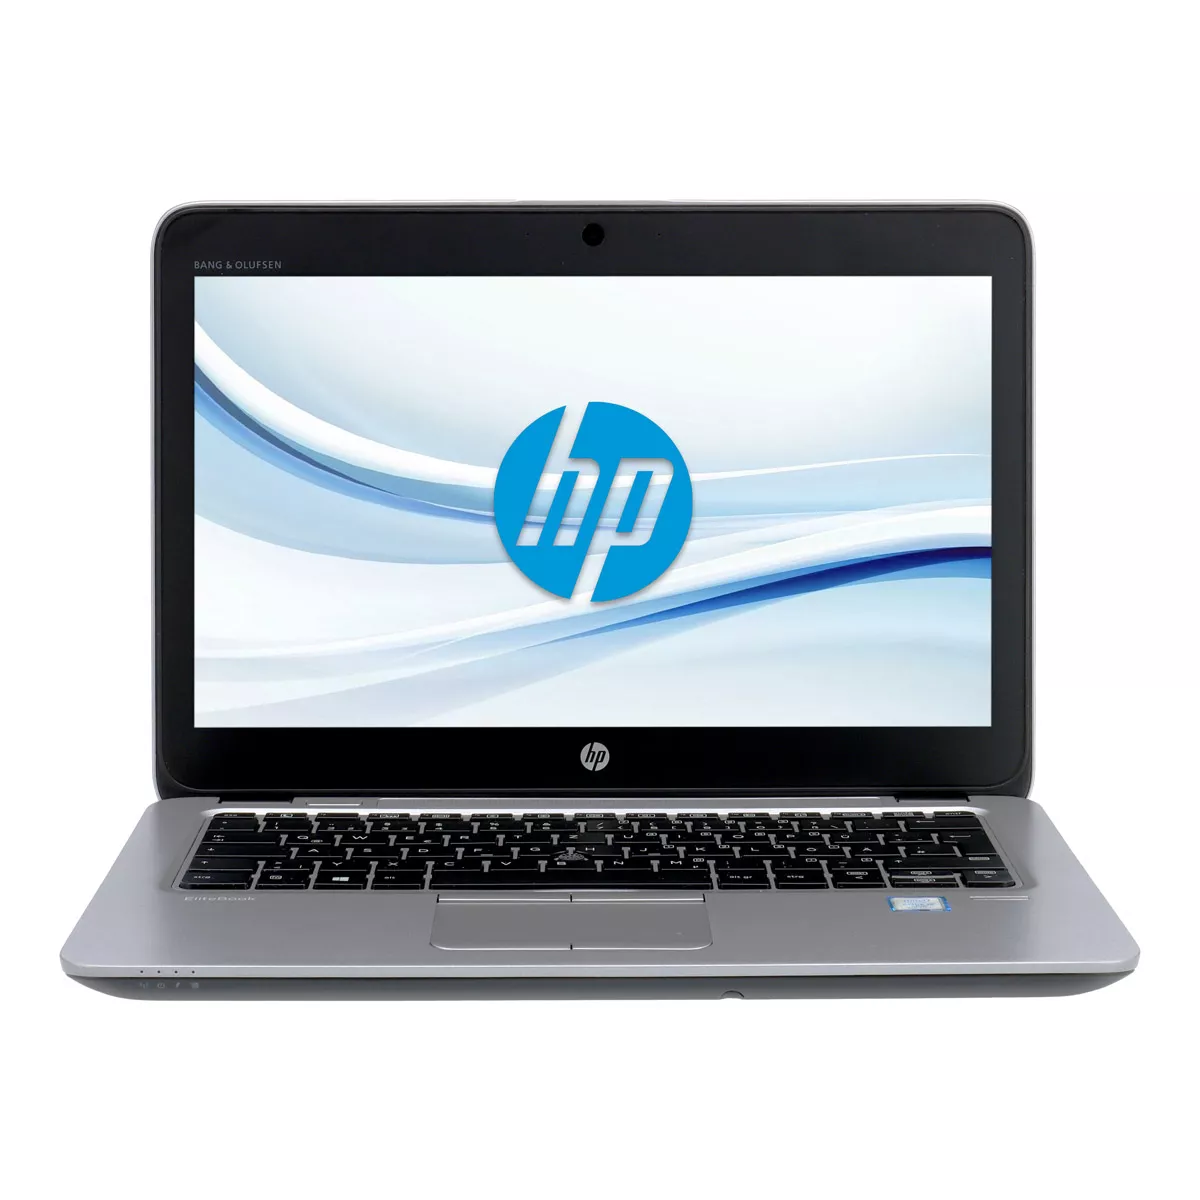 HP EliteBook 820 G3 Core i5 6200U 8 GB 180 GB SSD Webcam A